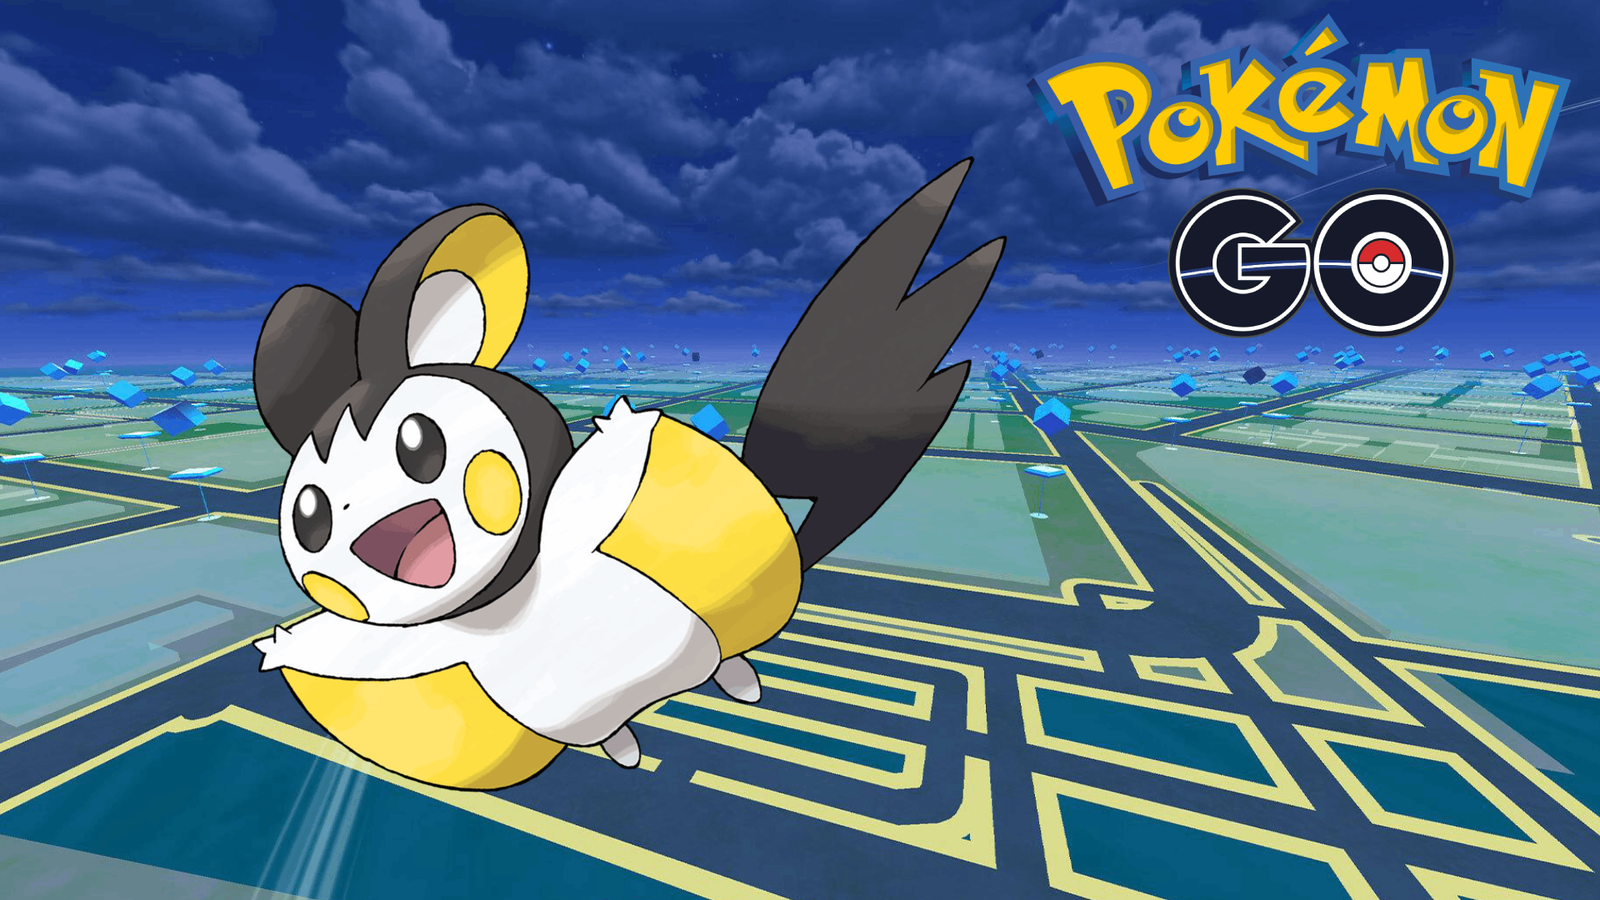 emolga flying on pokemon go background with pokemon go logo